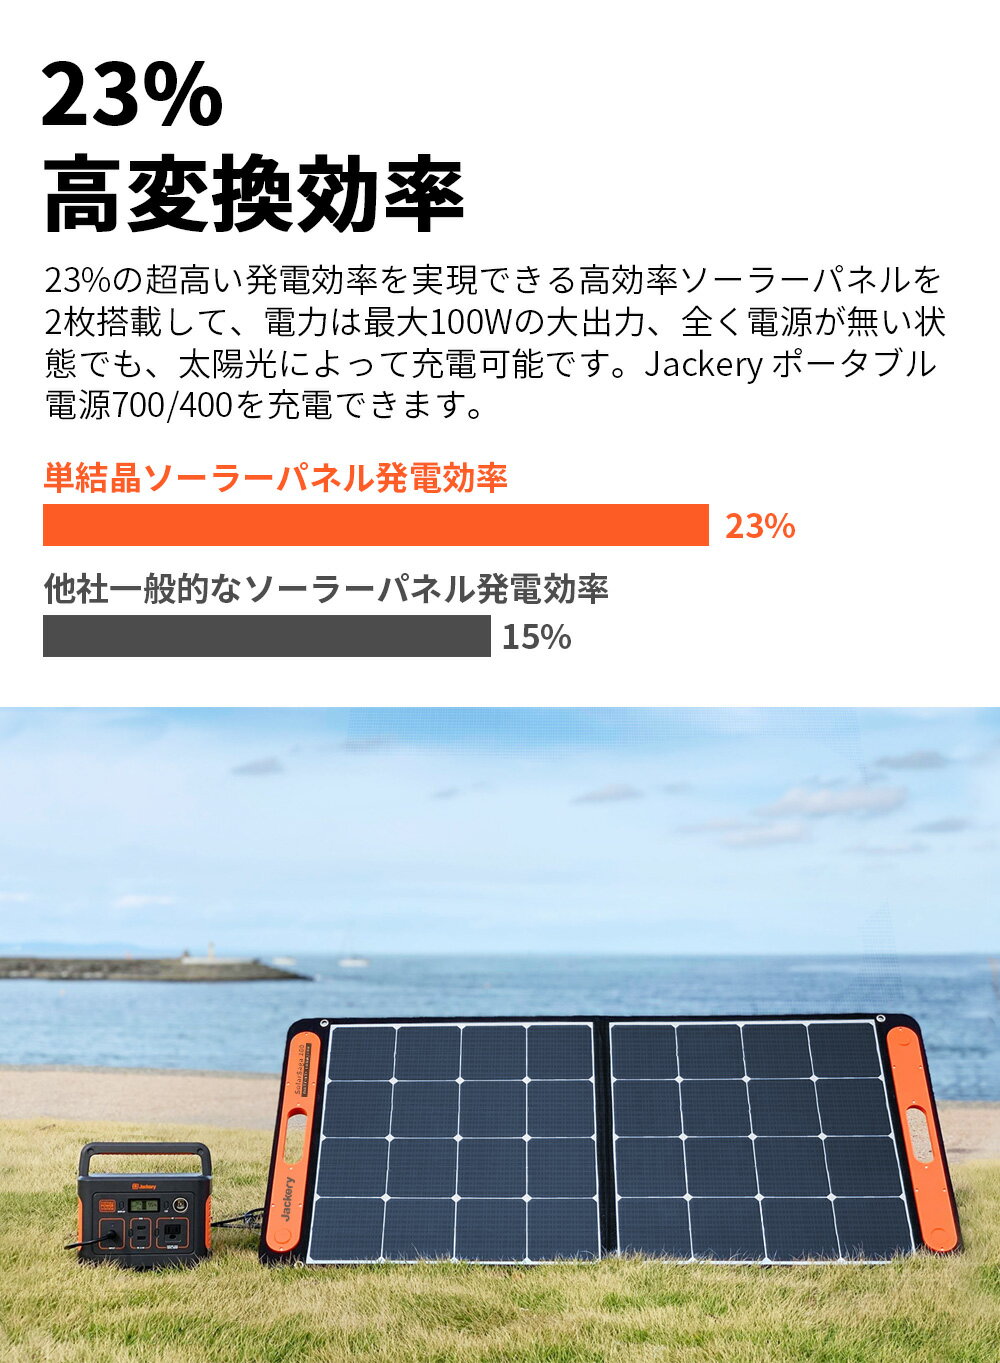 【楽天】Jackery SolarSaga 100 ソーラーパネル100W ソーラーチャージャー スマホやタブレット 充電可能の売れ筋人気